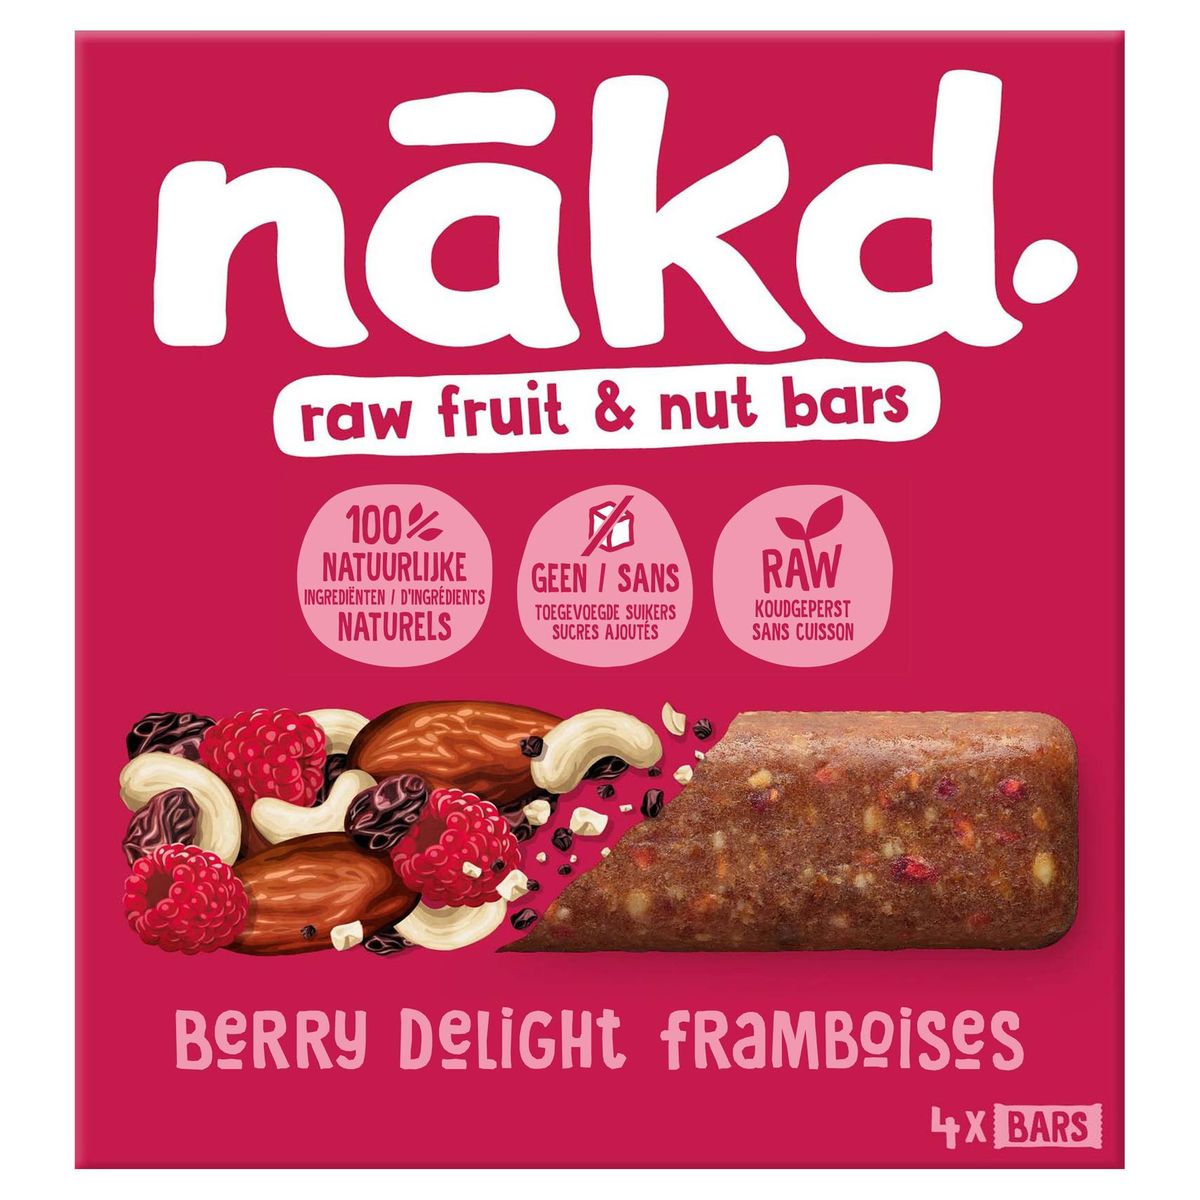 Nakd Berry Delight 4 x 35 g